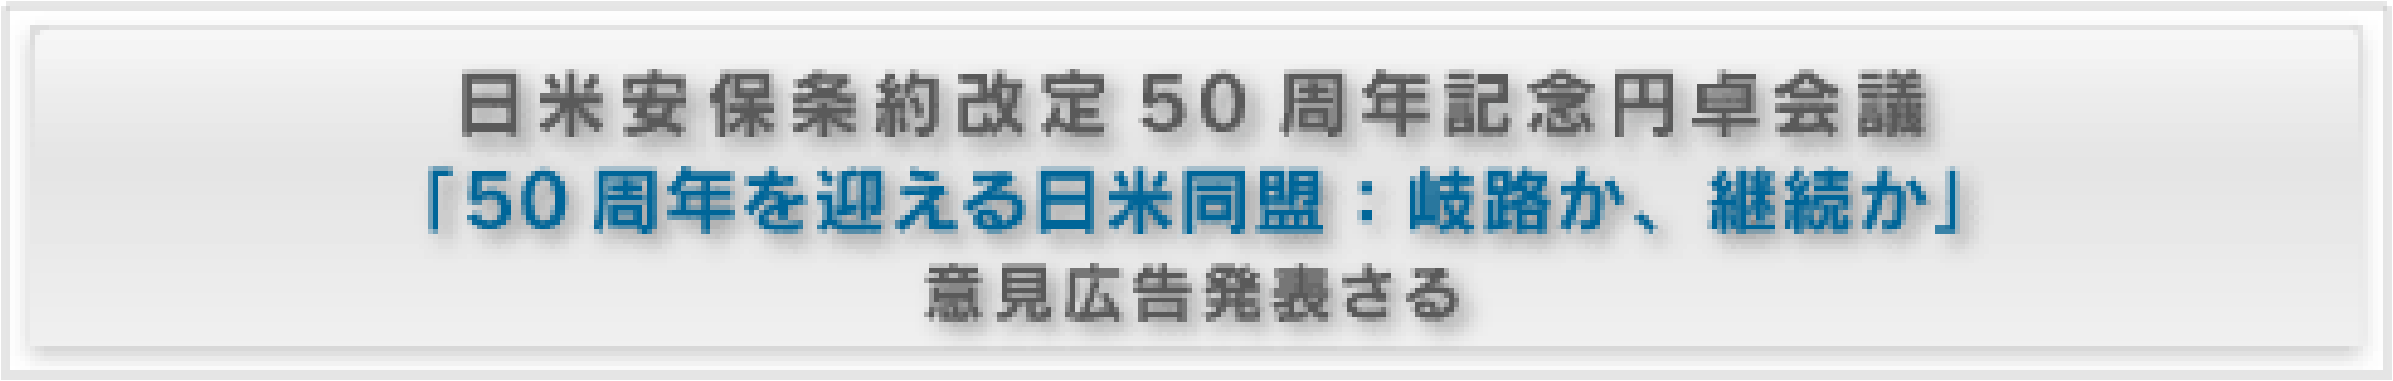 日米安保条約改定50周年記念円卓会議 「50周年を迎える日米同盟：岐路か、継続か」 意見広告発表さる